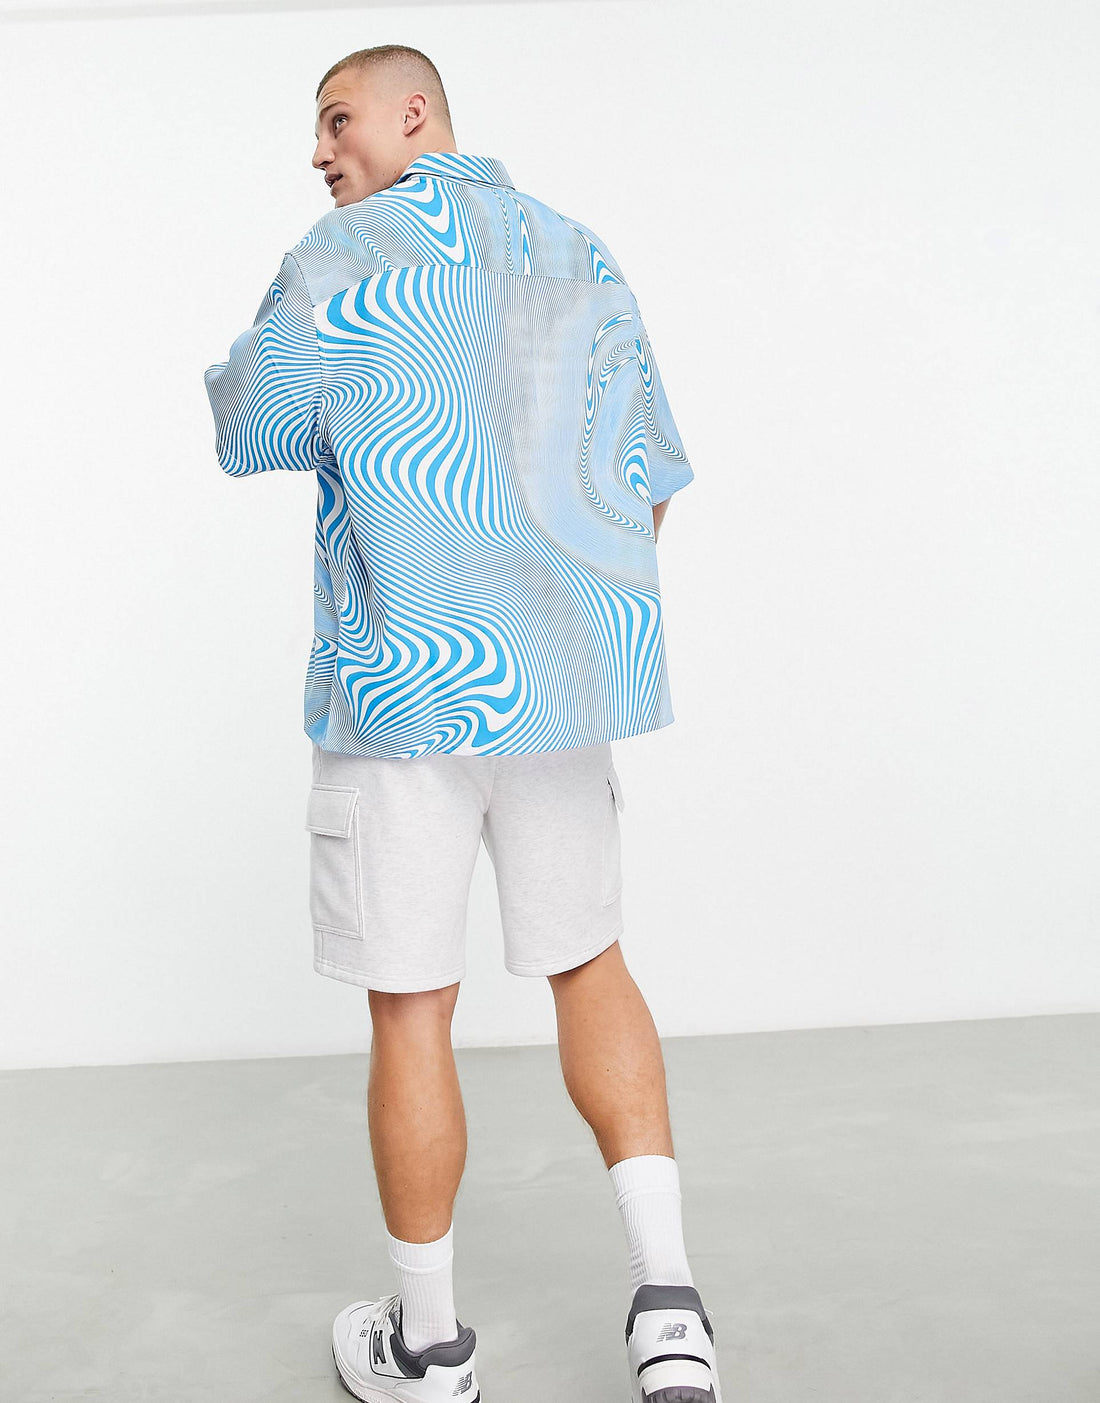 Swirl print shirt